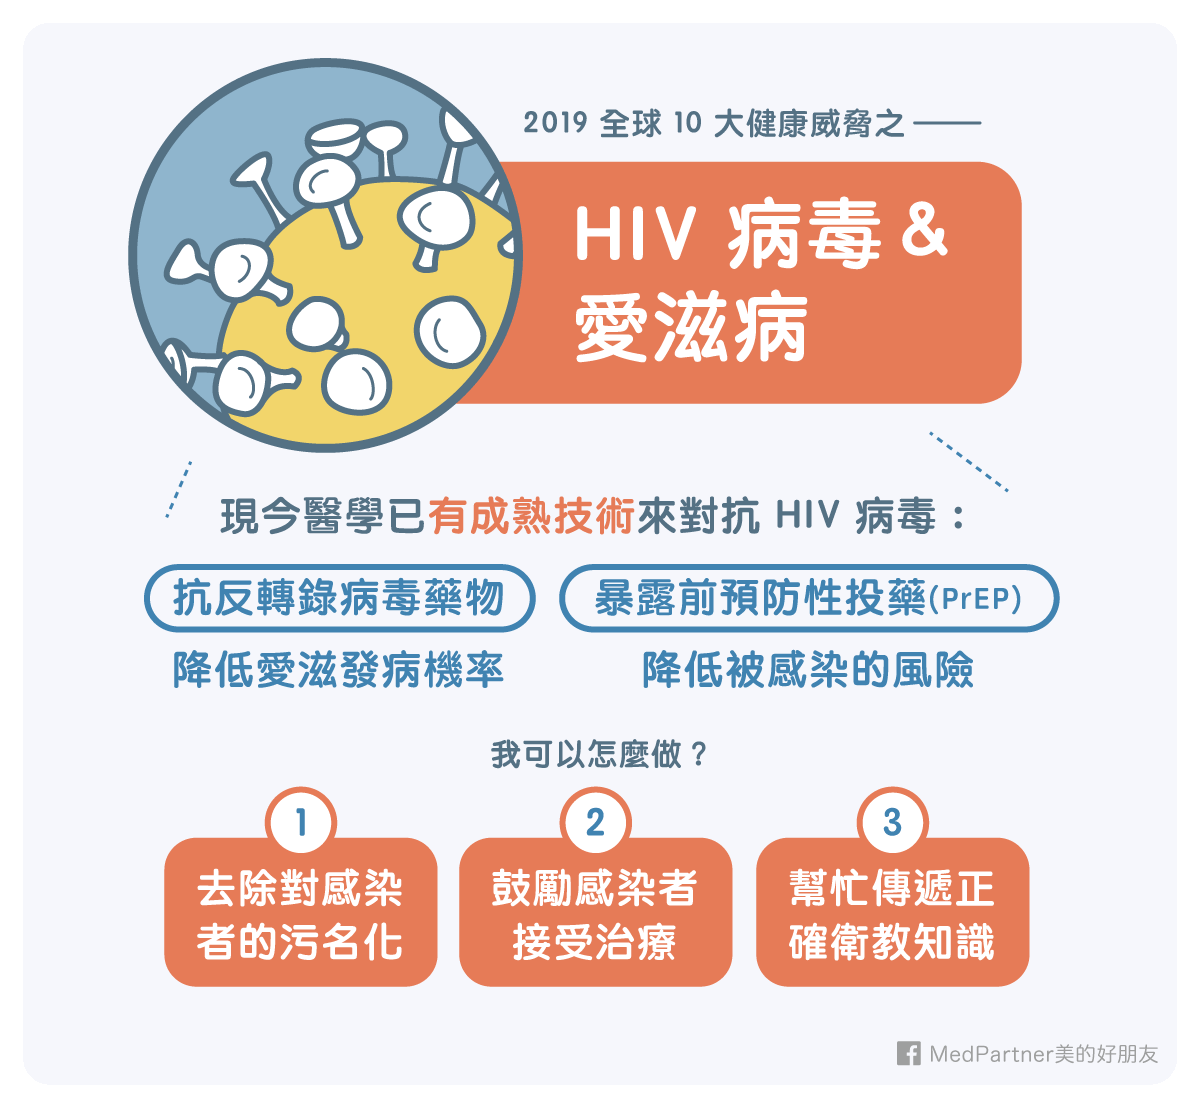 10大健康威脅_上_HIV與愛滋